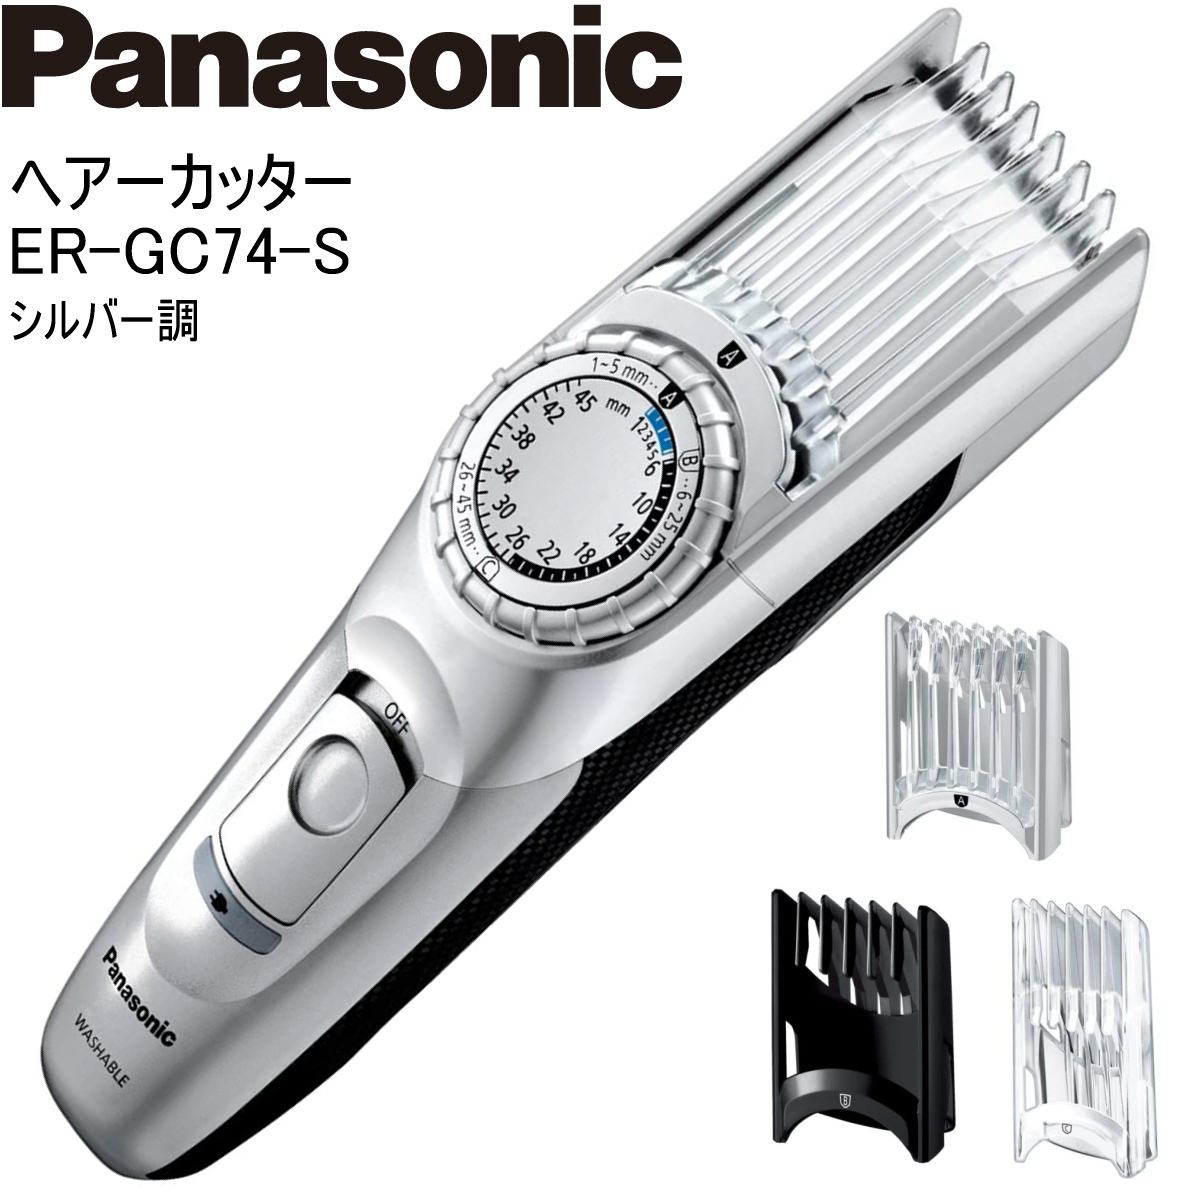 Panasonic パナソニック ヘアーカッター ER-GC74-S シルバー調 バリカン 充電・交流式 水洗い  :er-gc74-s:i-shopさくら !店 通販 